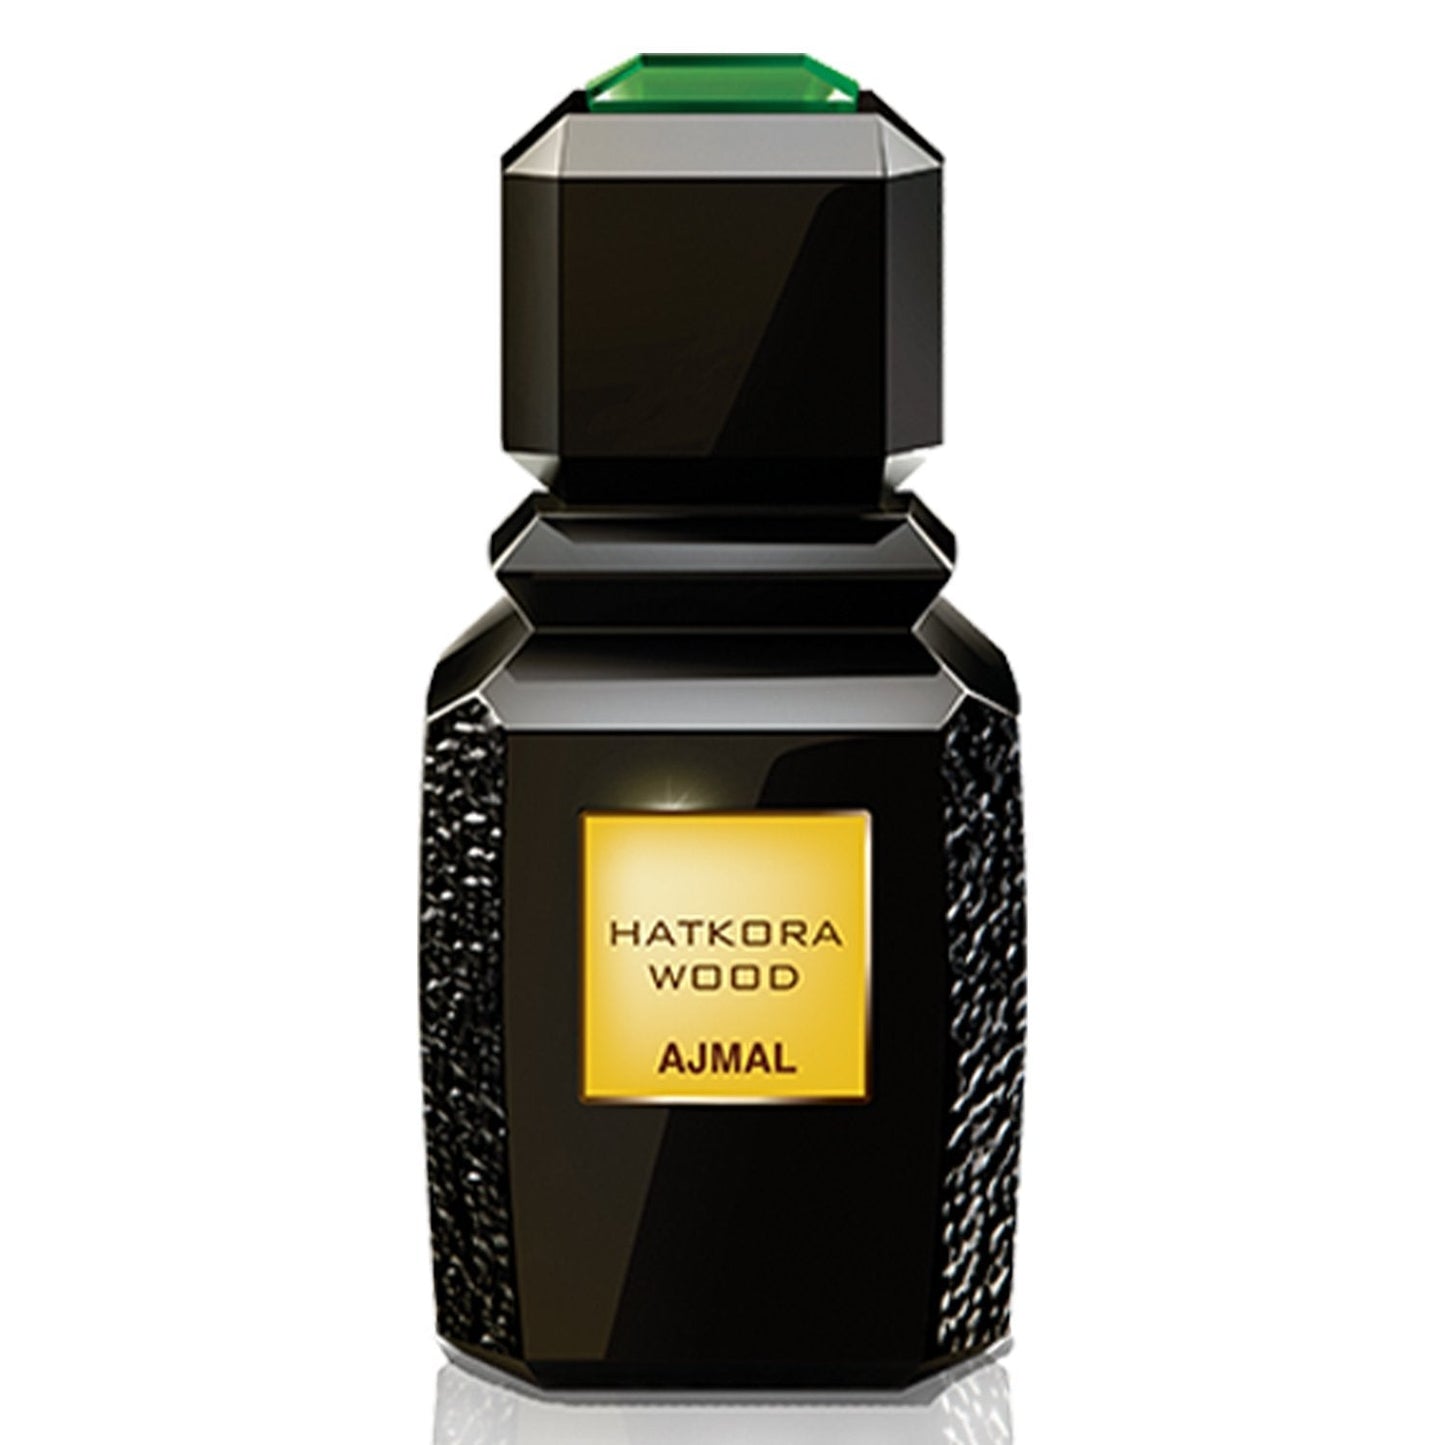 Hatkora Wood Eau de Parfum 100ml Ajmal-Perfume Heaven